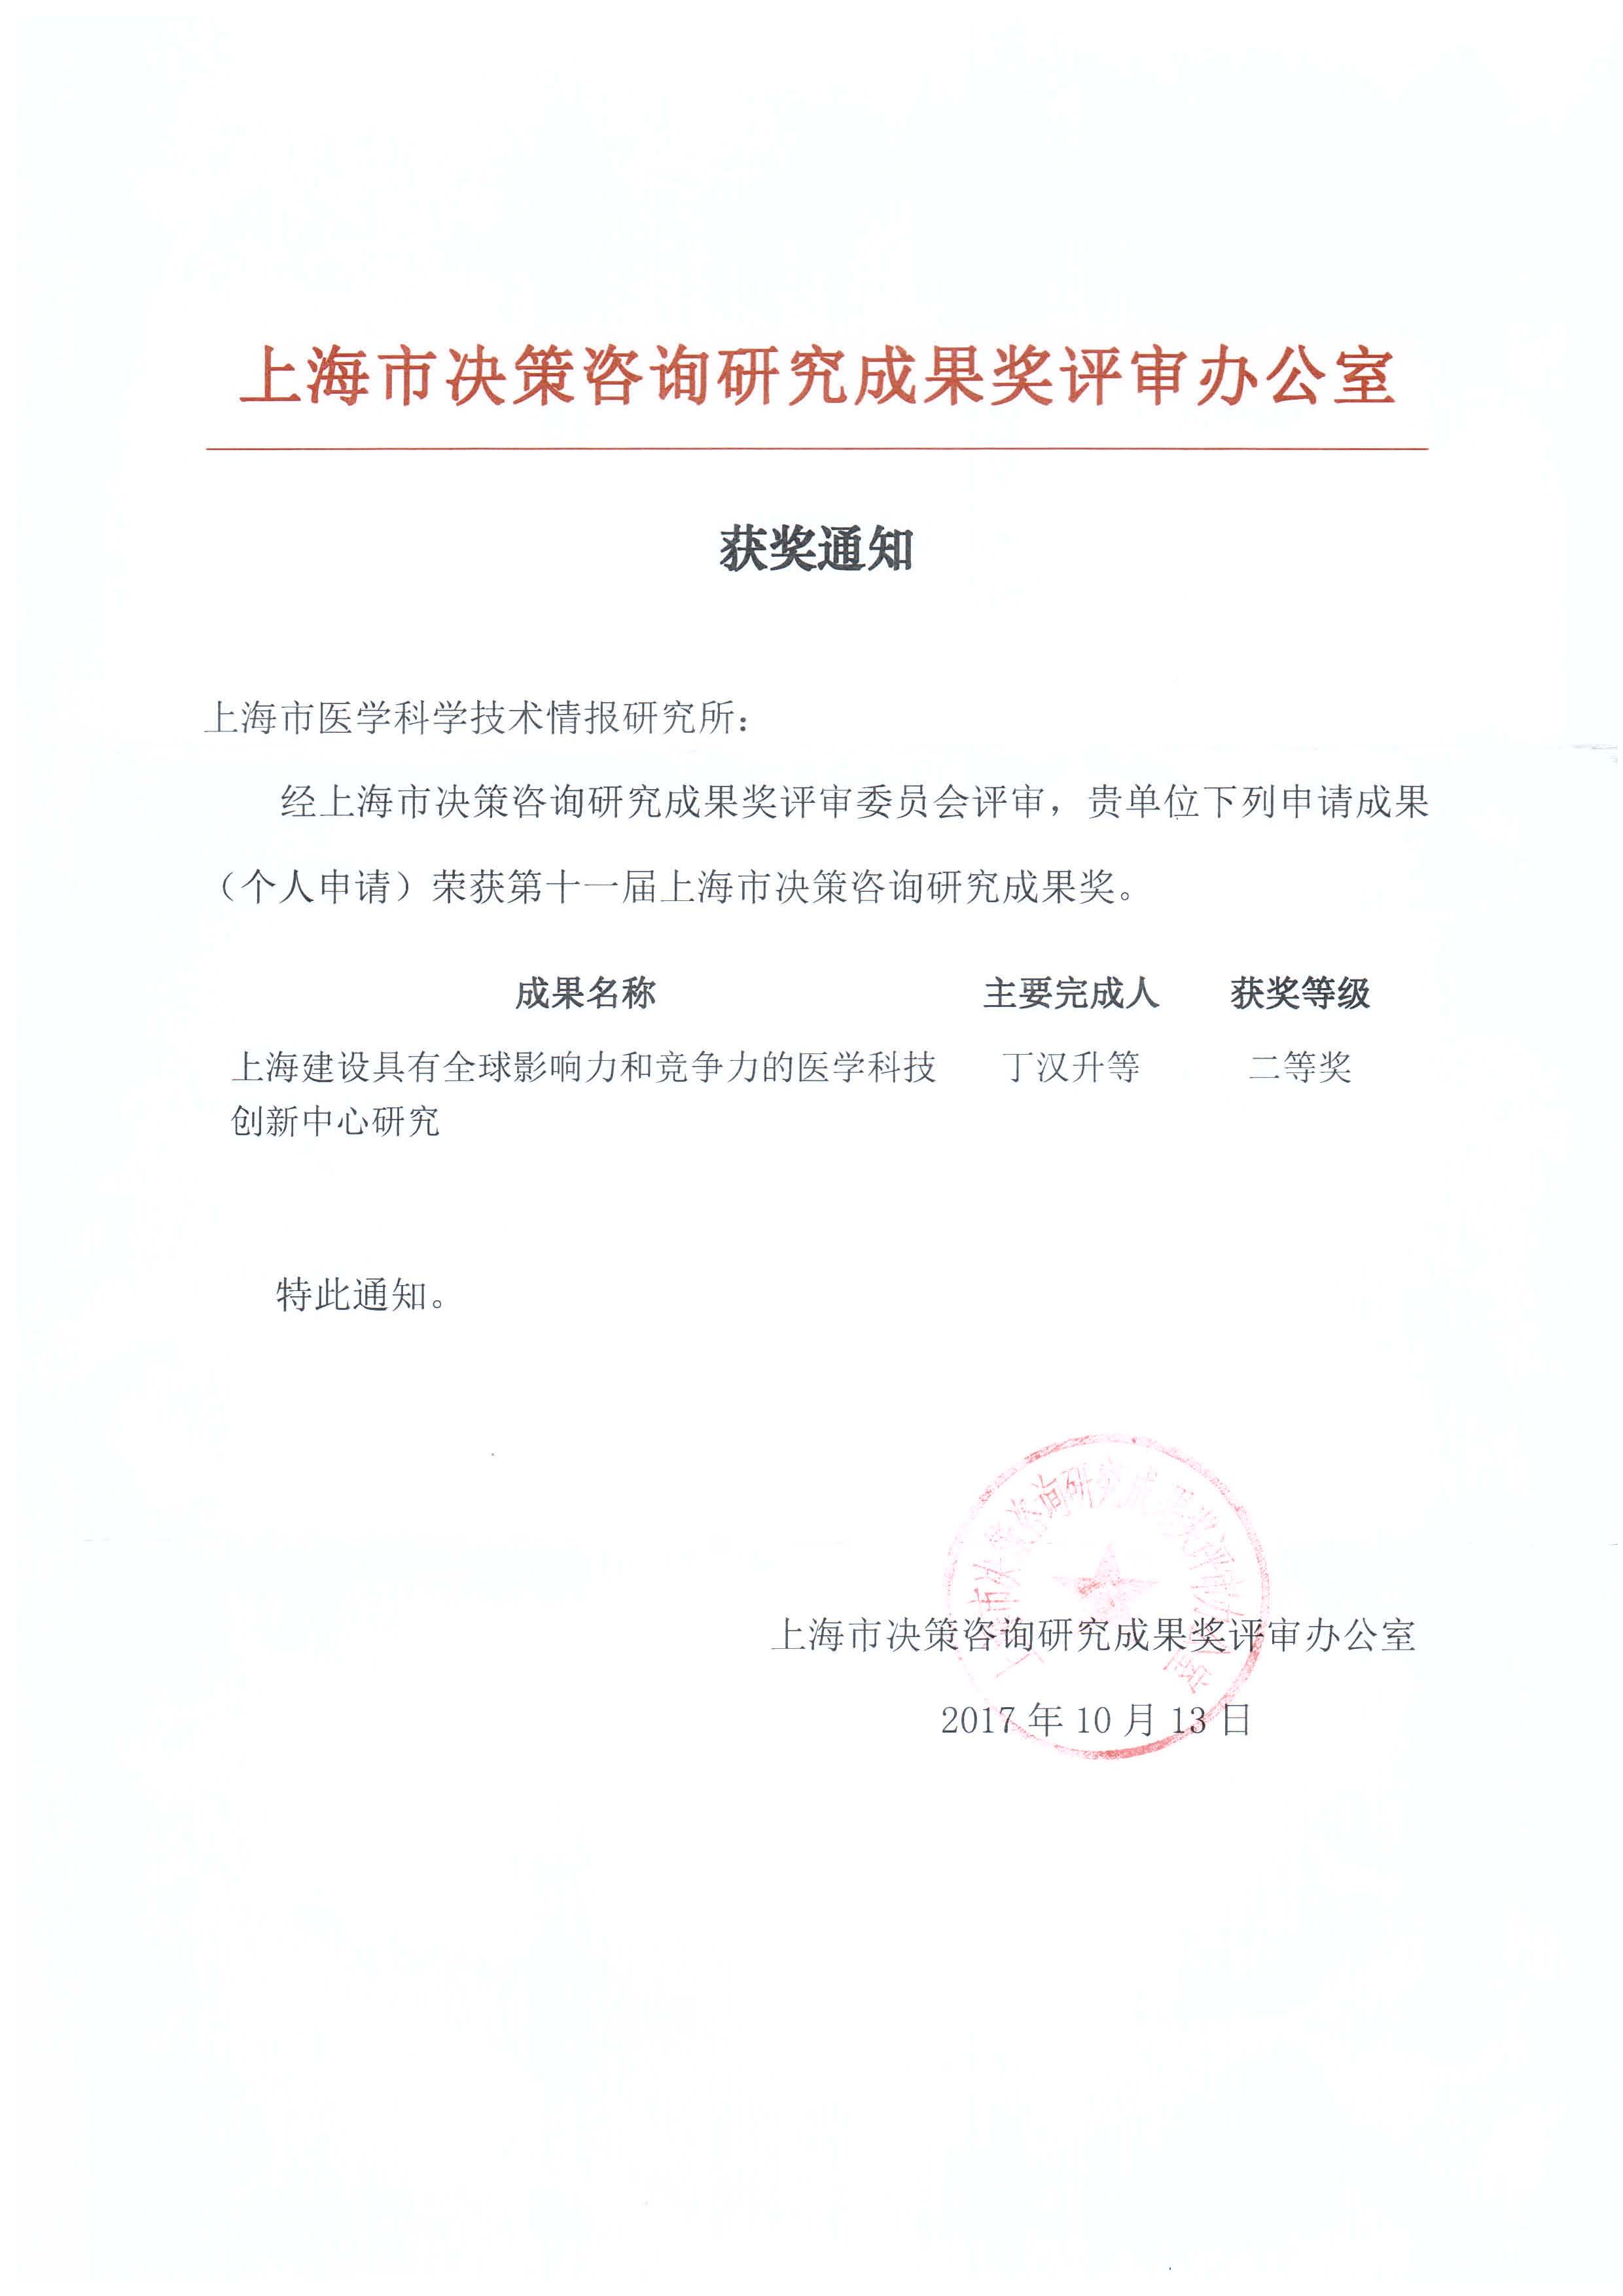 第十一届上海市决策咨询研究成果二等奖.jpg